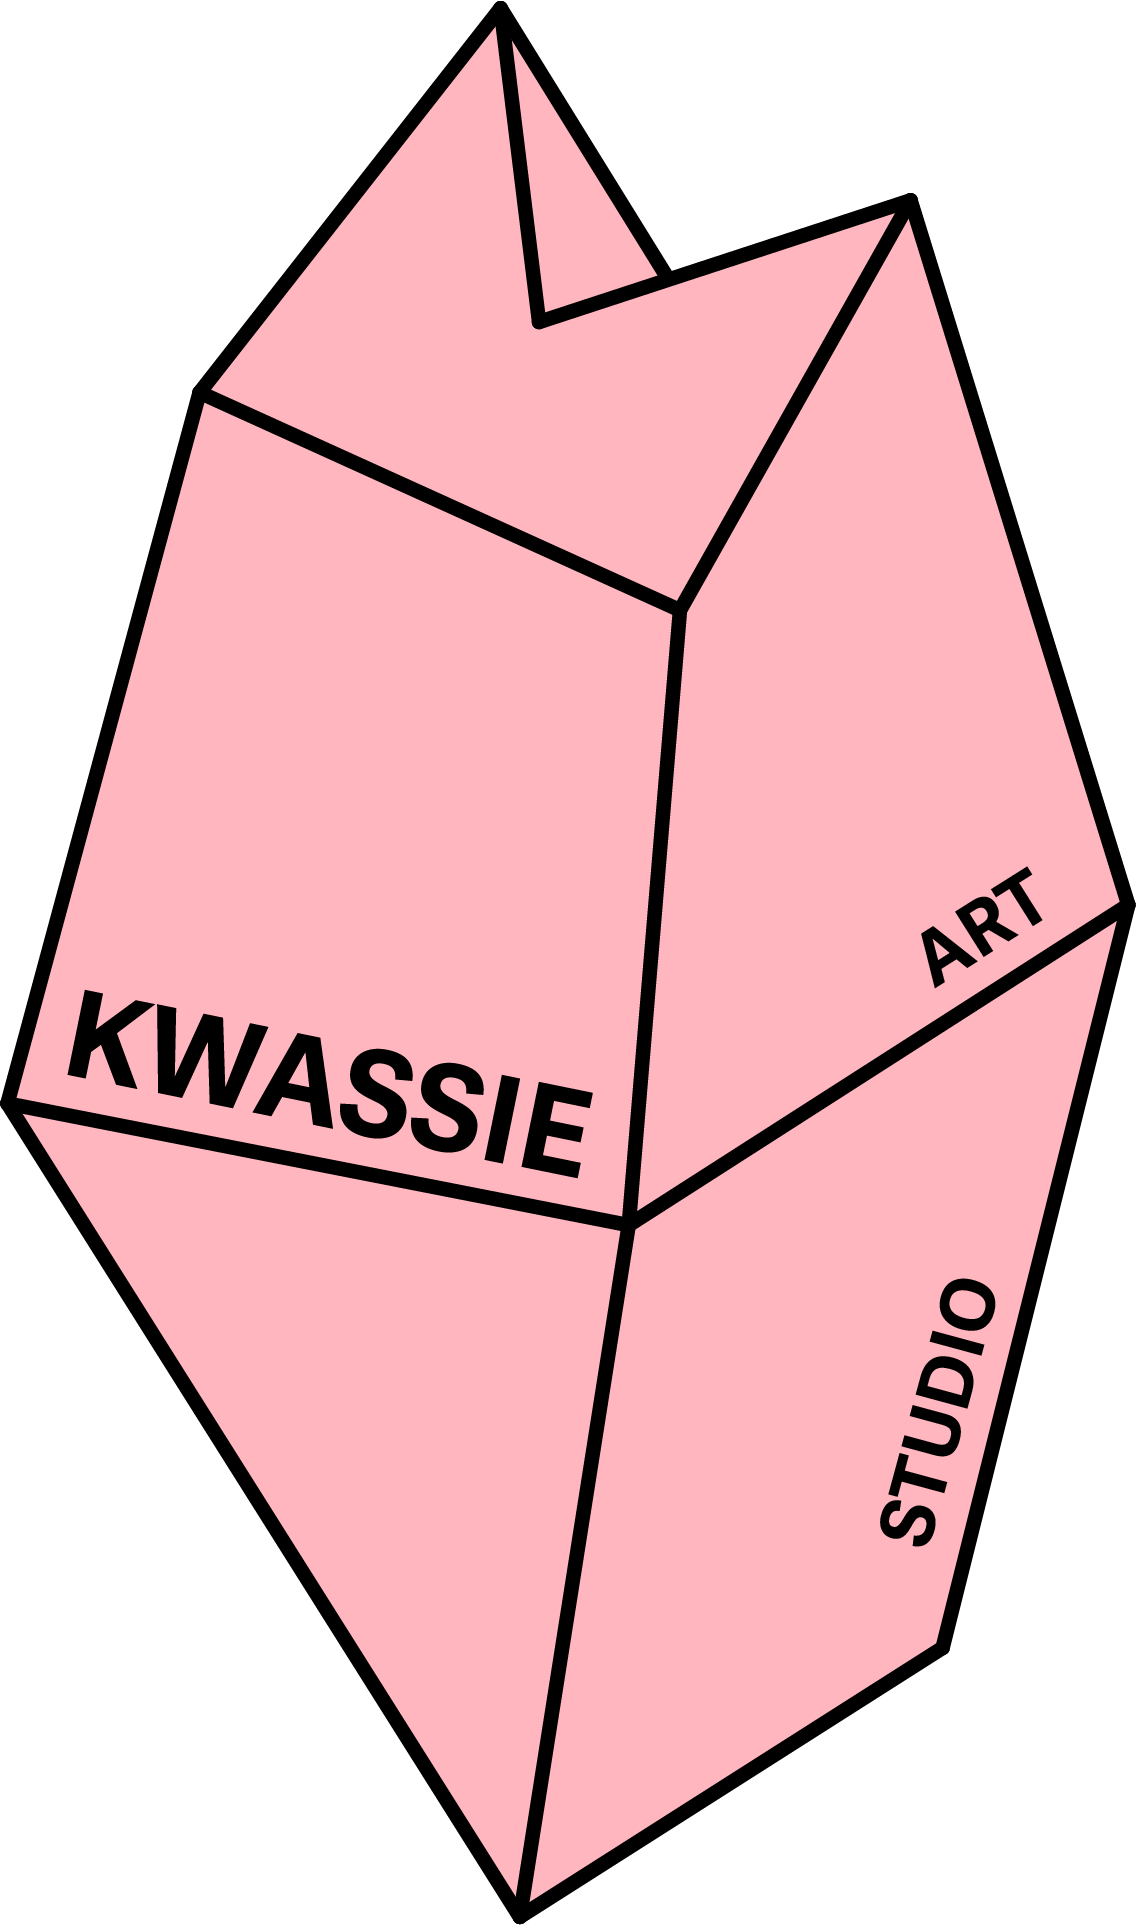 KWASSIE Art Studio